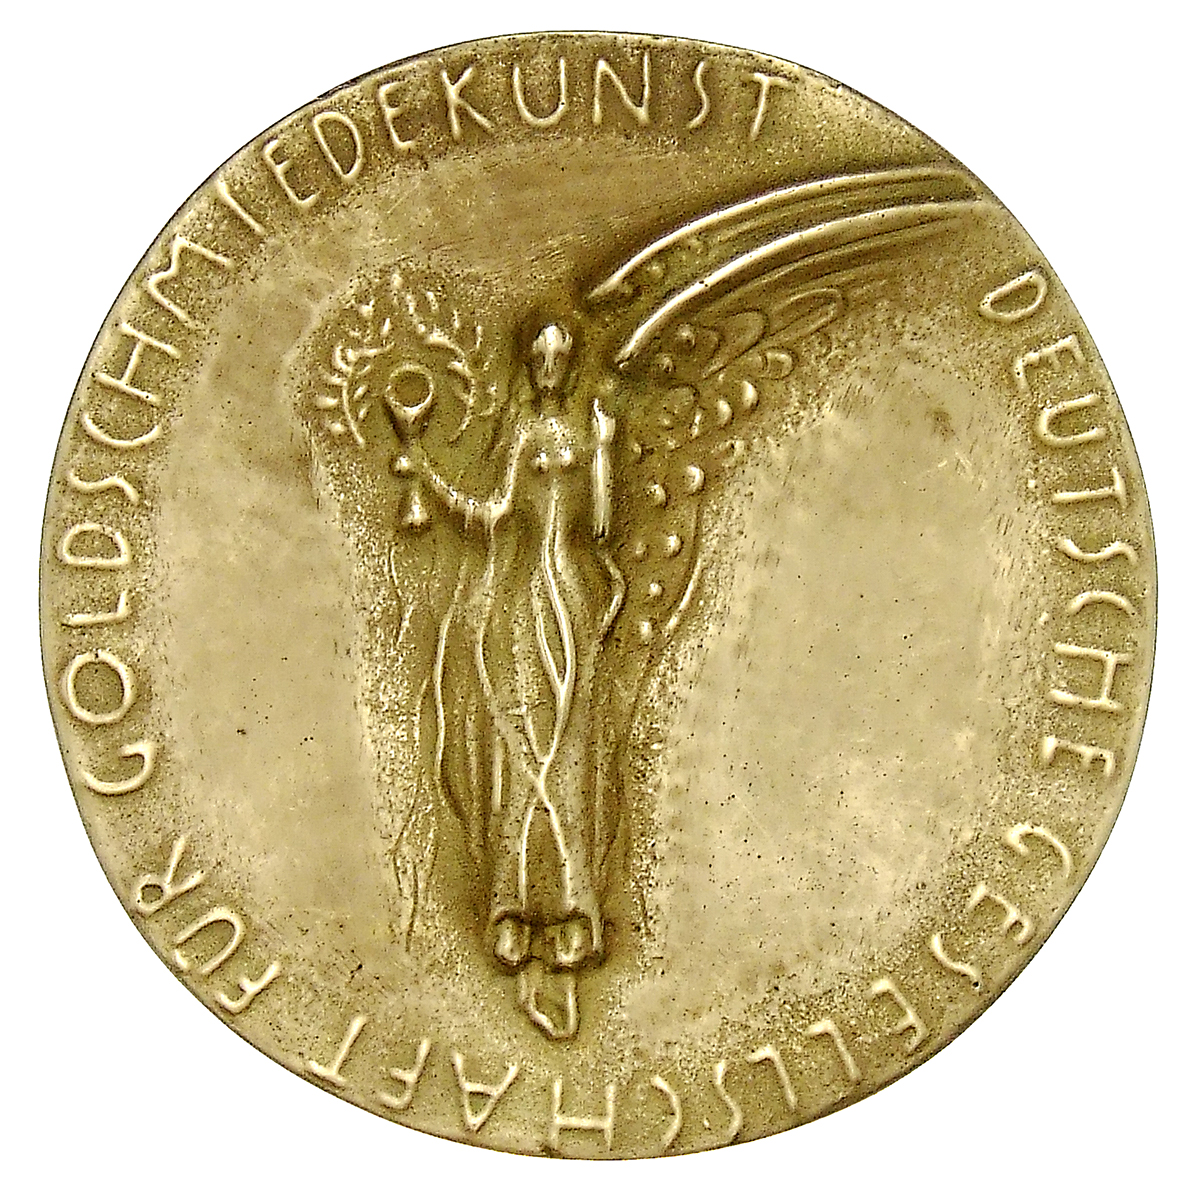 Schumacher, Kurt: Medaille der Deutschen Gesellschaft für Goldschmiedekunst